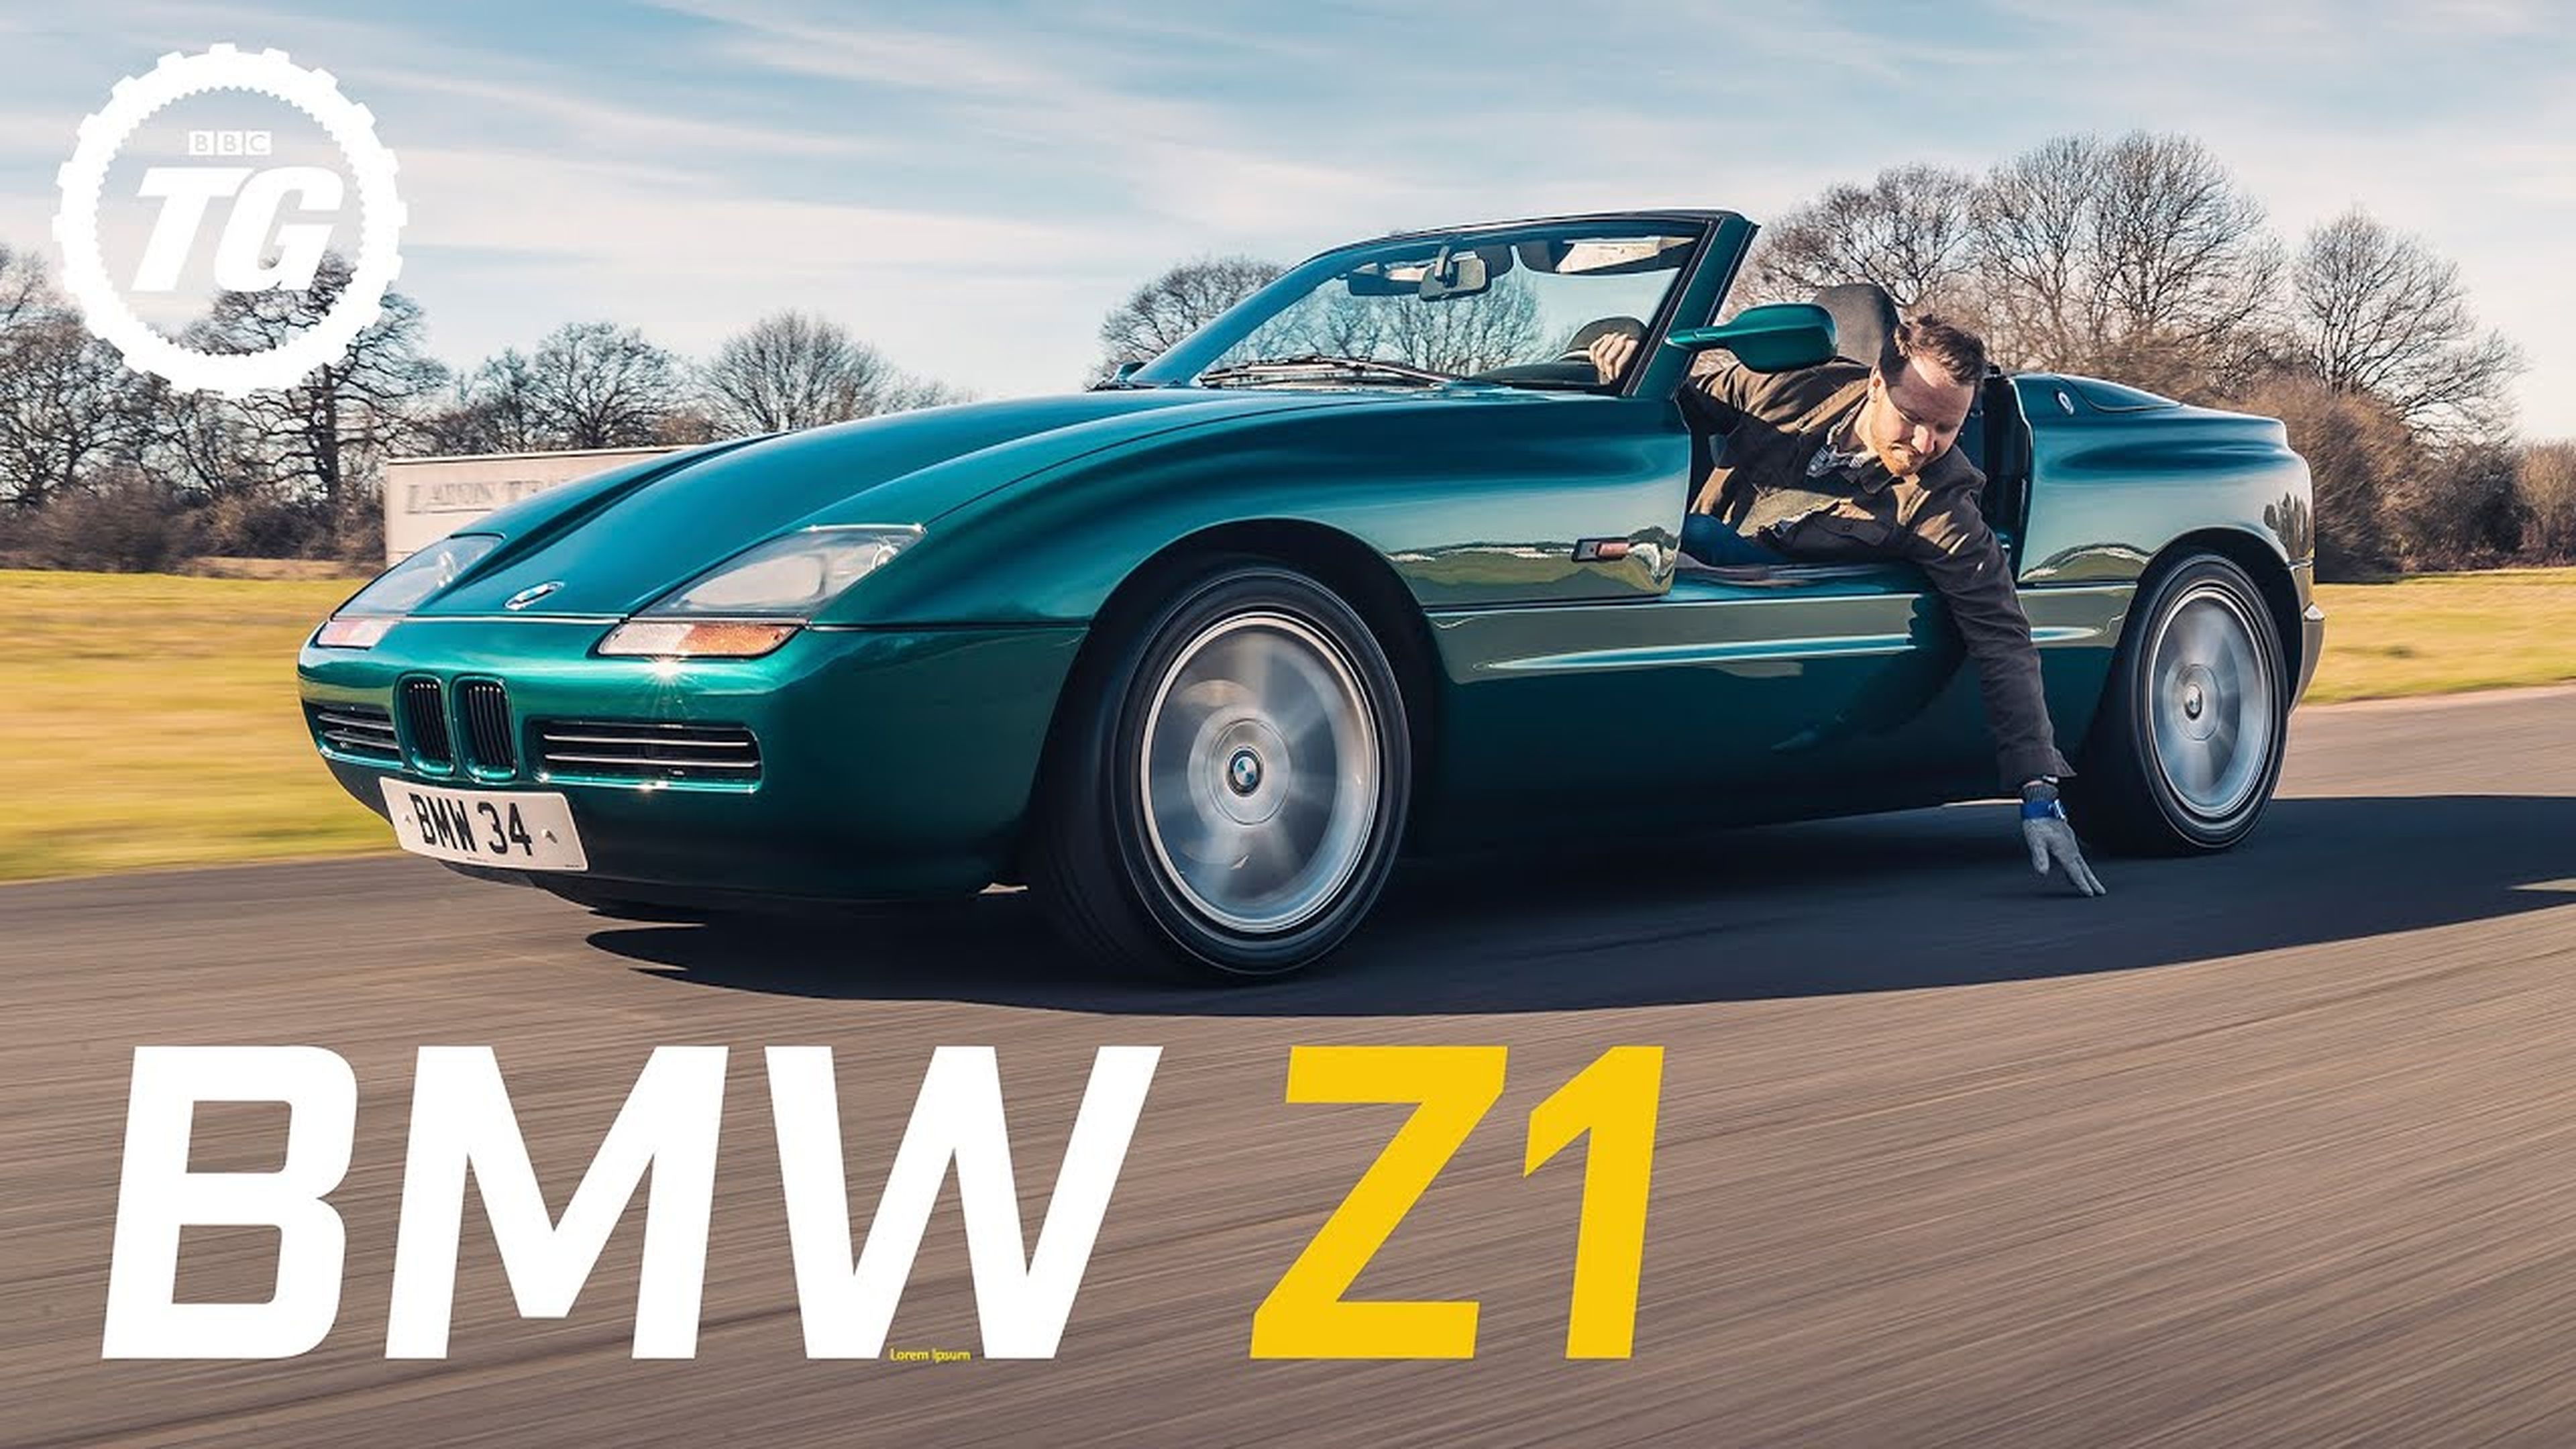 VÍDEO: BMW Z1. ¿Es este el coche perfecto para "sentir realmente la carretera"?